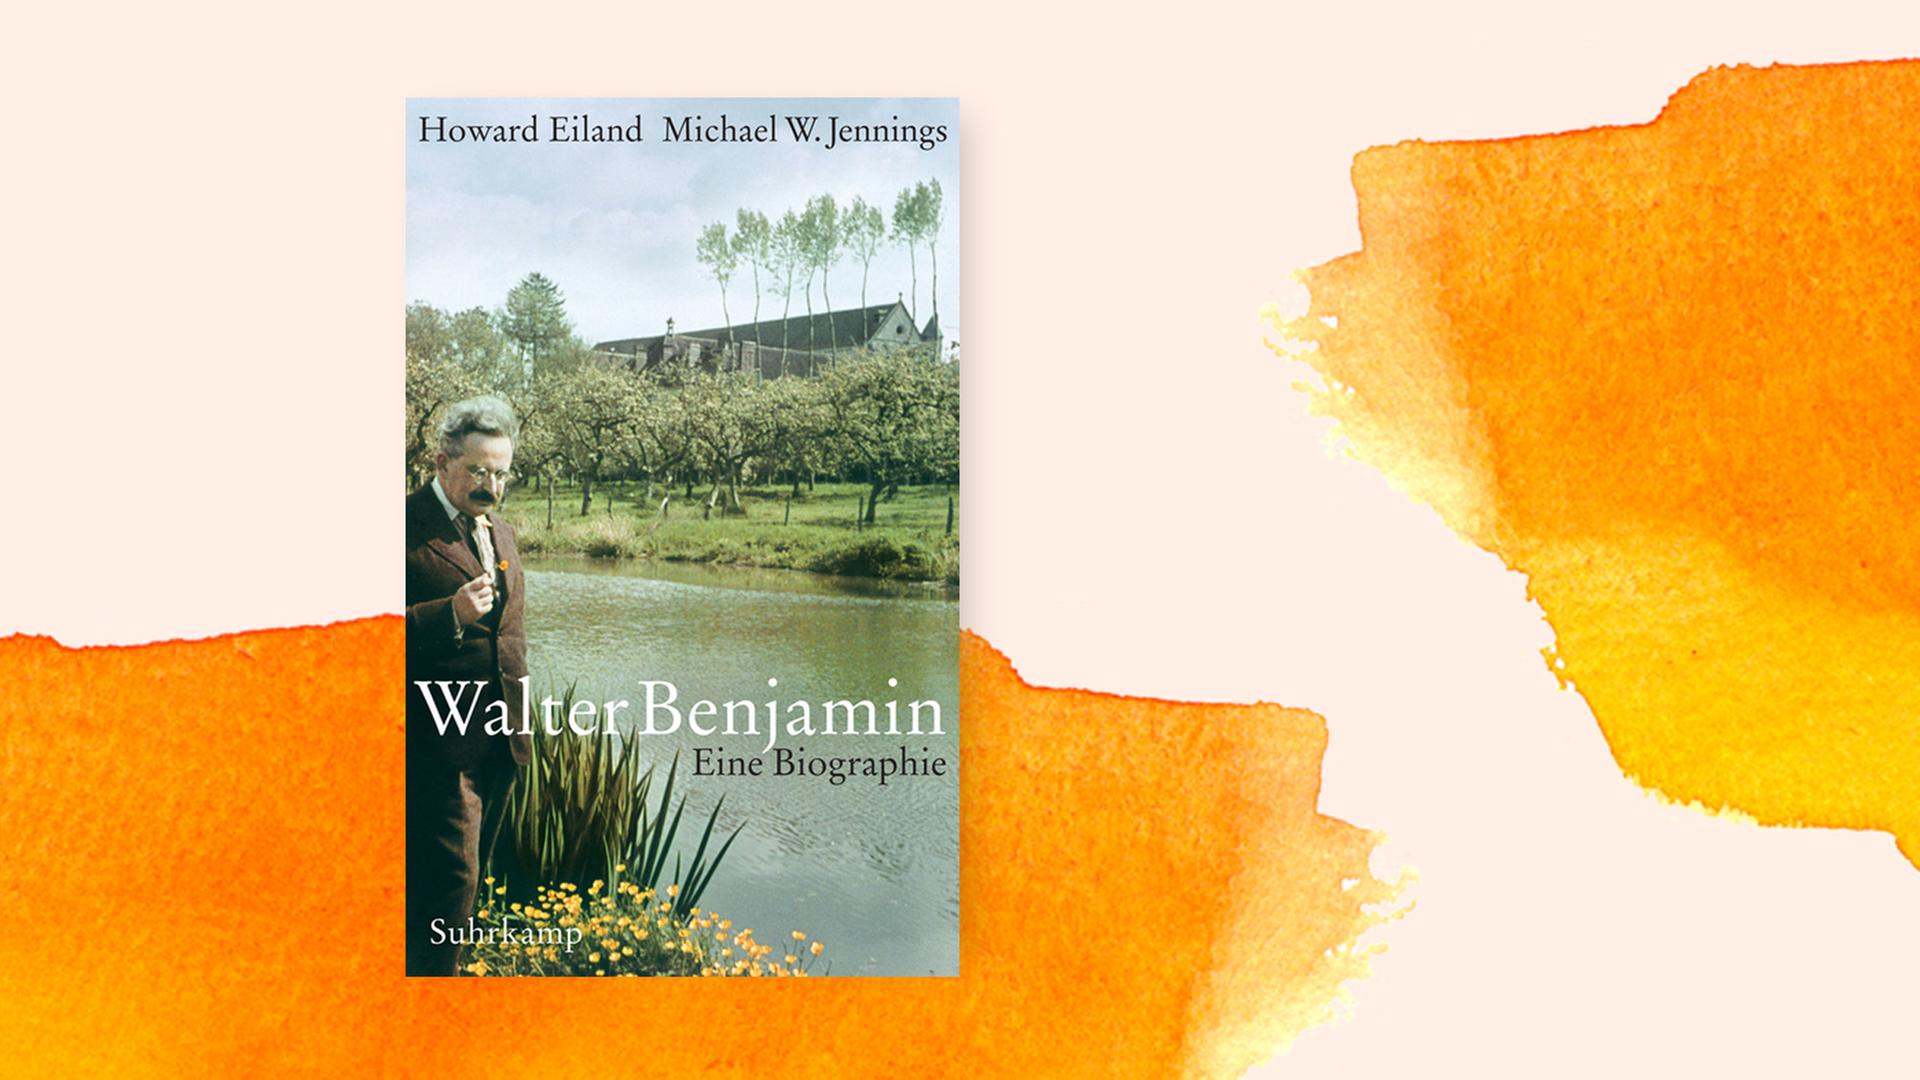 Collage mit dem Cover der Biografie über Walter Benjamin, im Hintergrund ein orange-gelbes Aquarell.